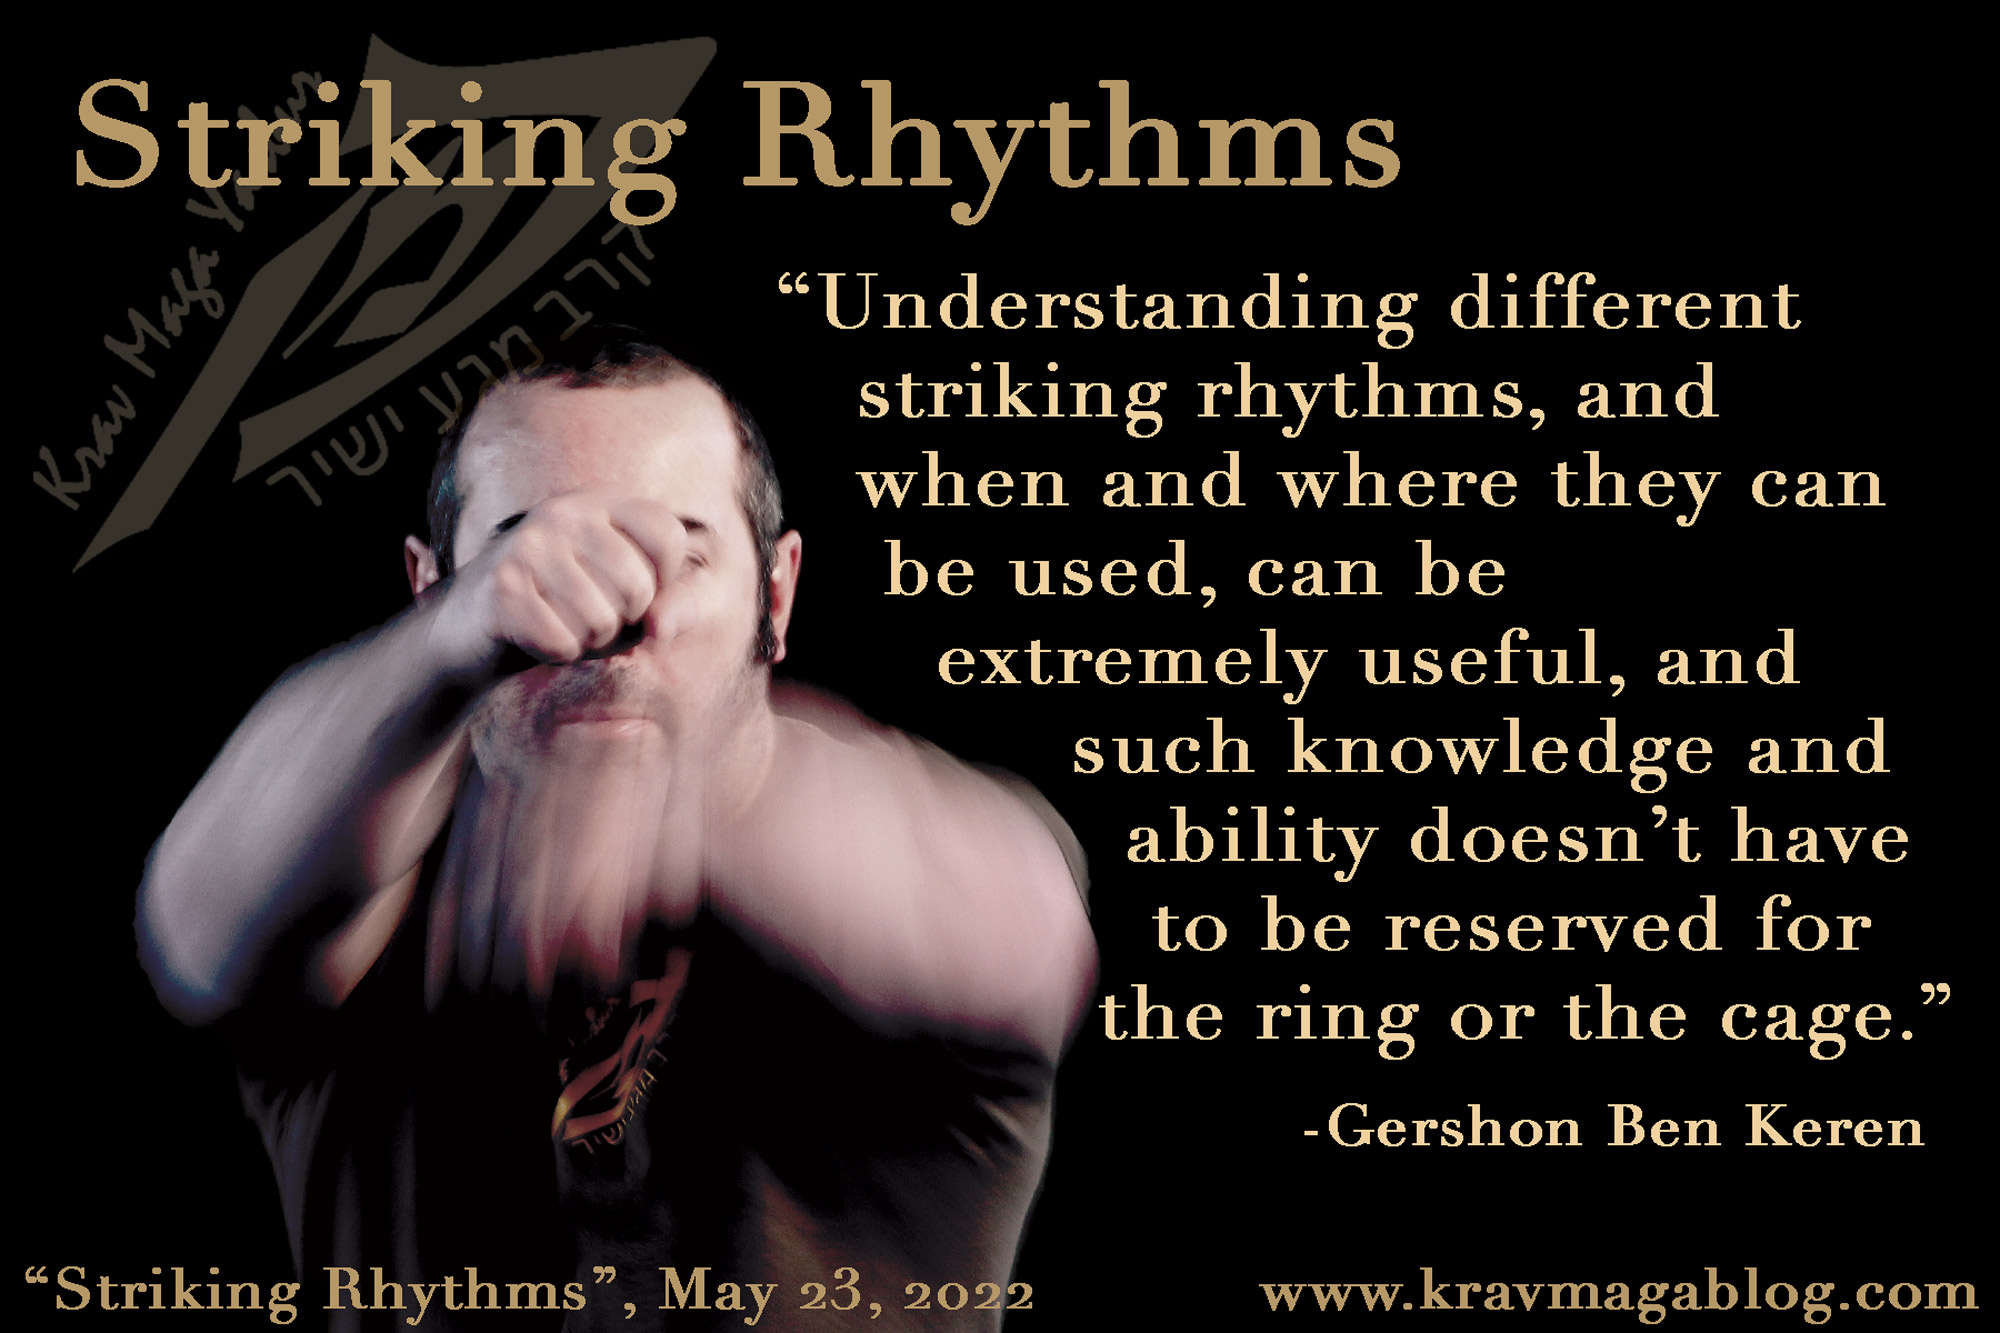 Blog About Striking Rhythms